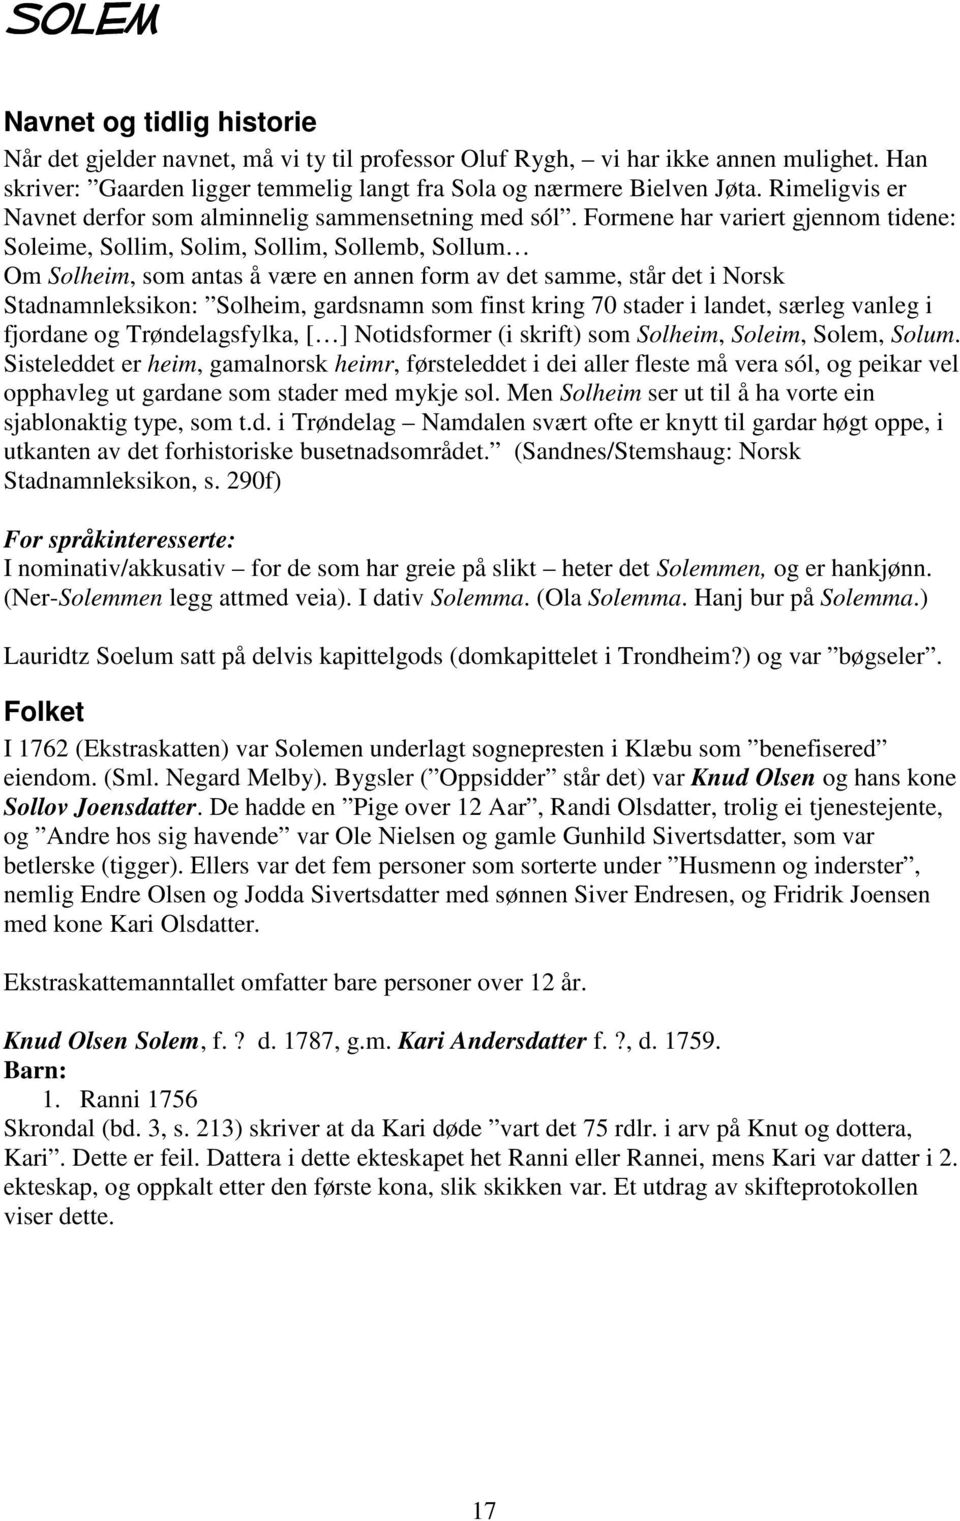 Formene har variert gjennom tidene: Soleime, Sollim, Solim, Sollim, Sollemb, Sollum Om Solheim, som antas å være en annen form av det samme, står det i Norsk Stadnamnleksikon: Solheim, gardsnamn som